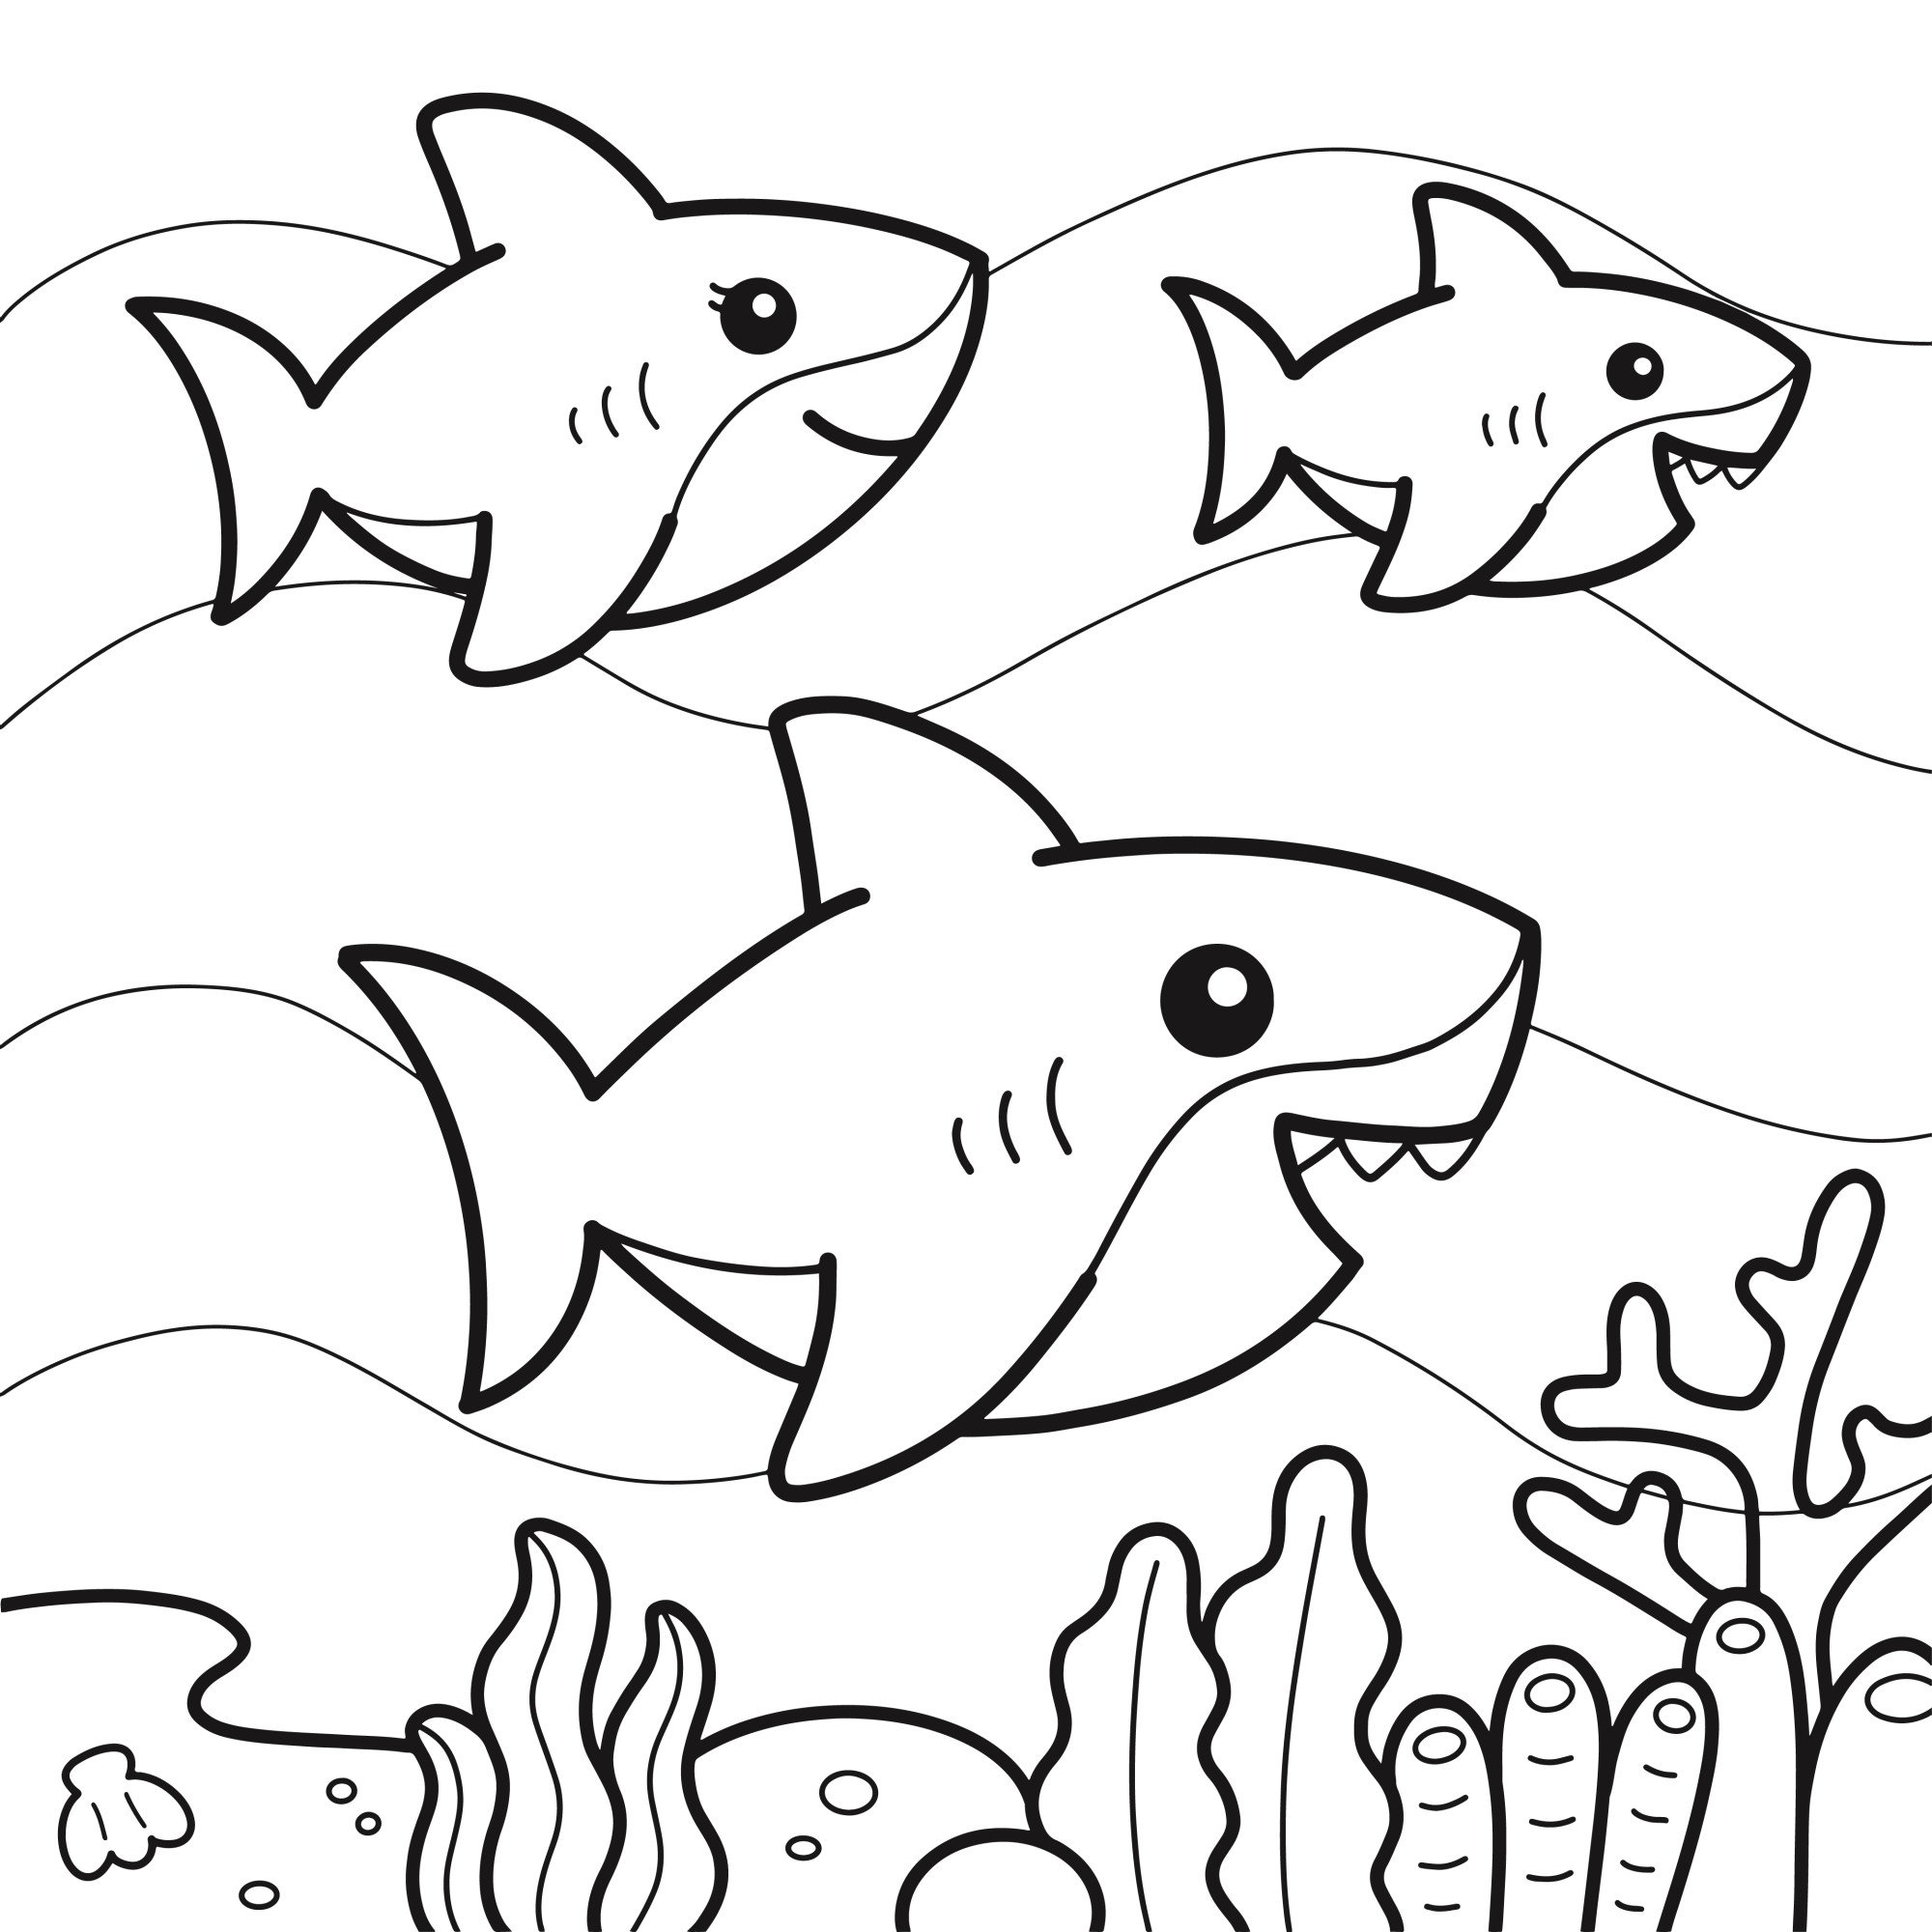 Раскраска для детей: акулы на дне океана